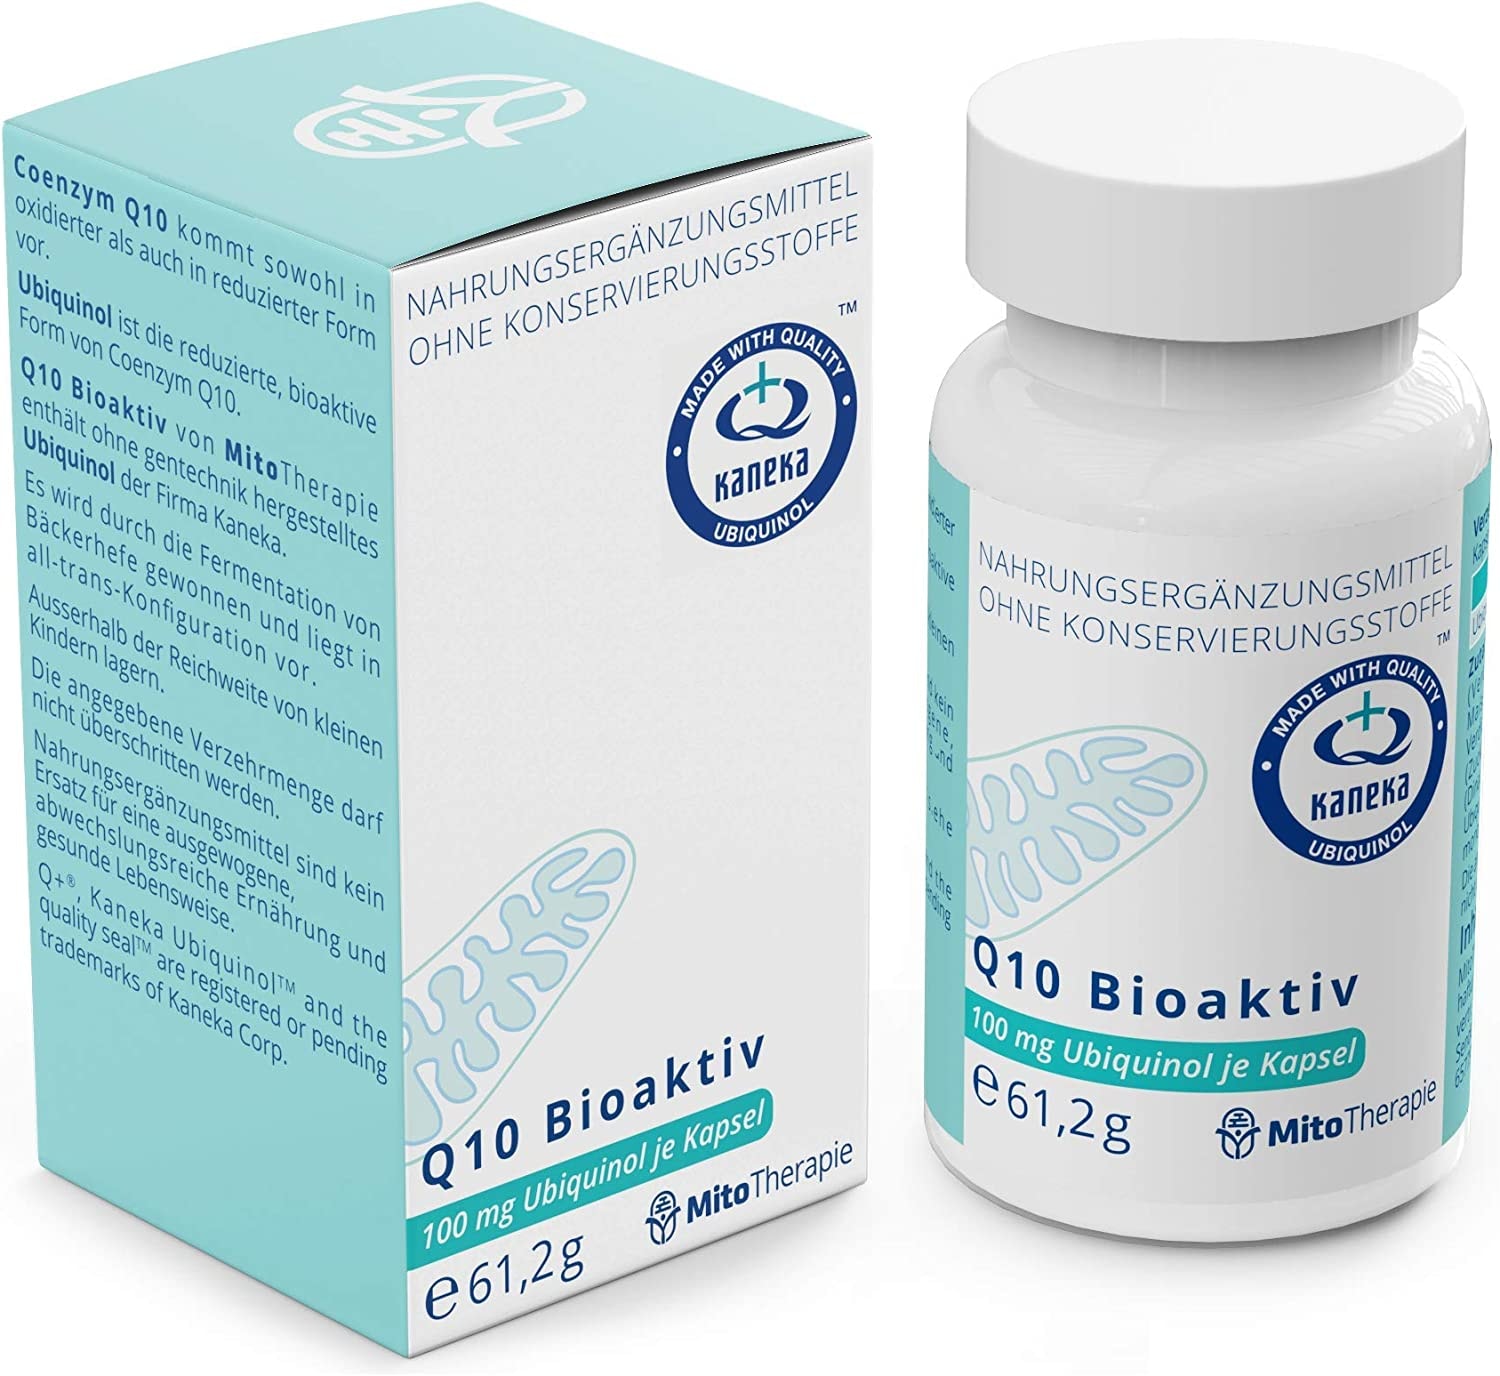 MitoTherapie - Q10 Bioaktiv - 100 mg Ubiquinol je Kapsel - 90 vegetarische Kapseln mit der reduzierten, atmungsaktiven Form von Coenzym Q10 - Coenzym Q10 in seiner besten Form!